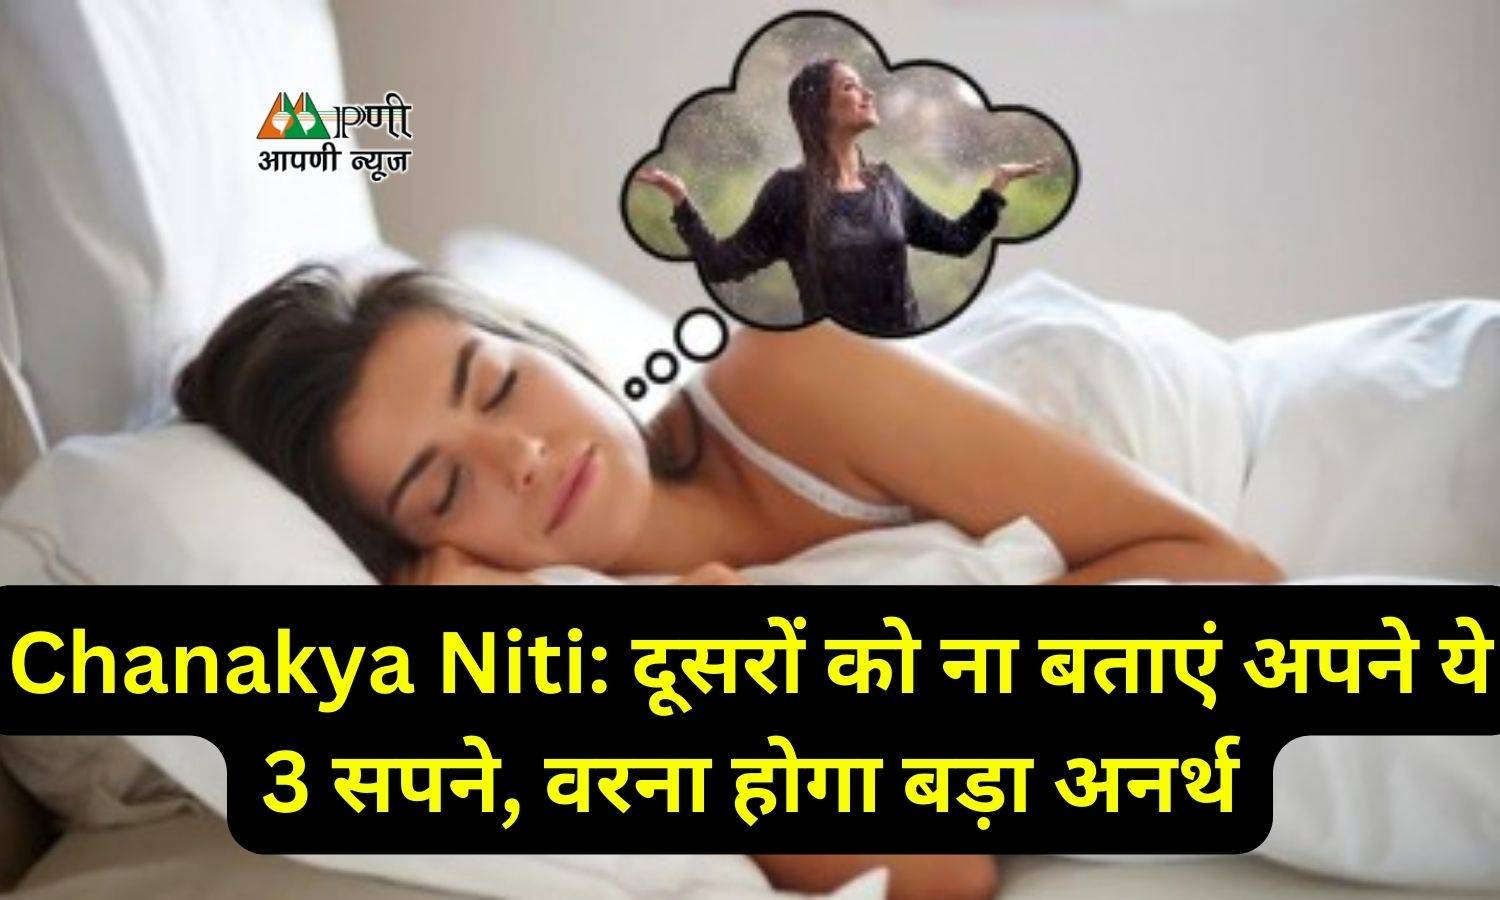 Chanakya Niti: दूसरों को ना बताएं अपने ये 3 सपने, वरना होगा बड़ा अनर्थ